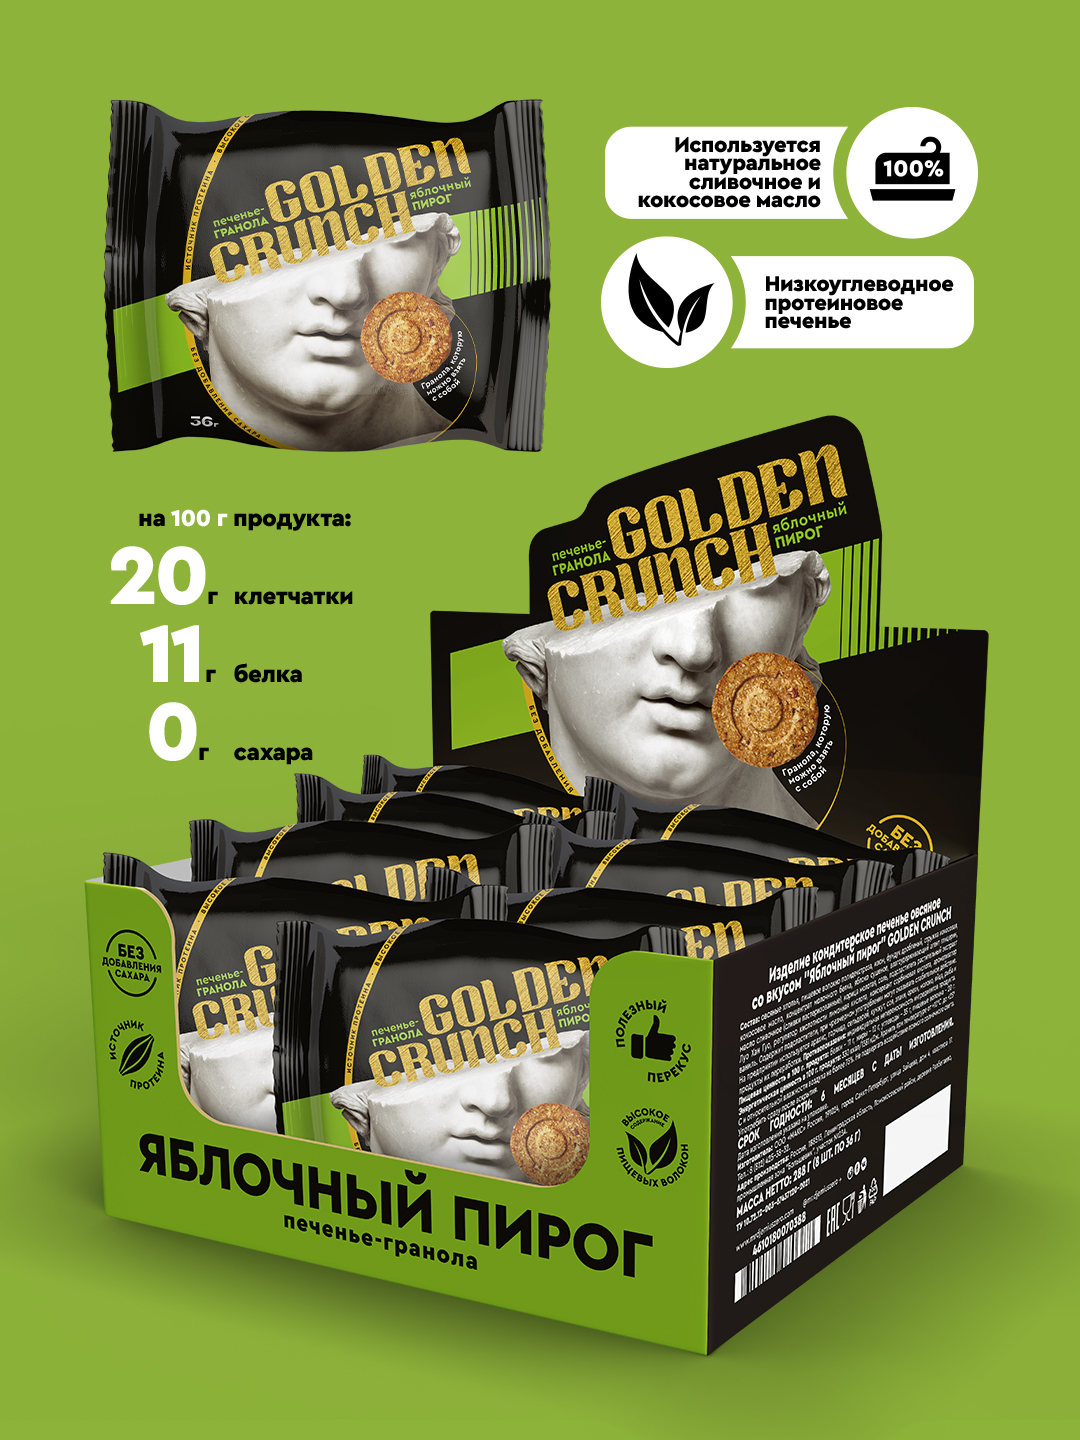 Mr.DjemiusZERO Гранольное печенье Golden Crunch (36 гр.)